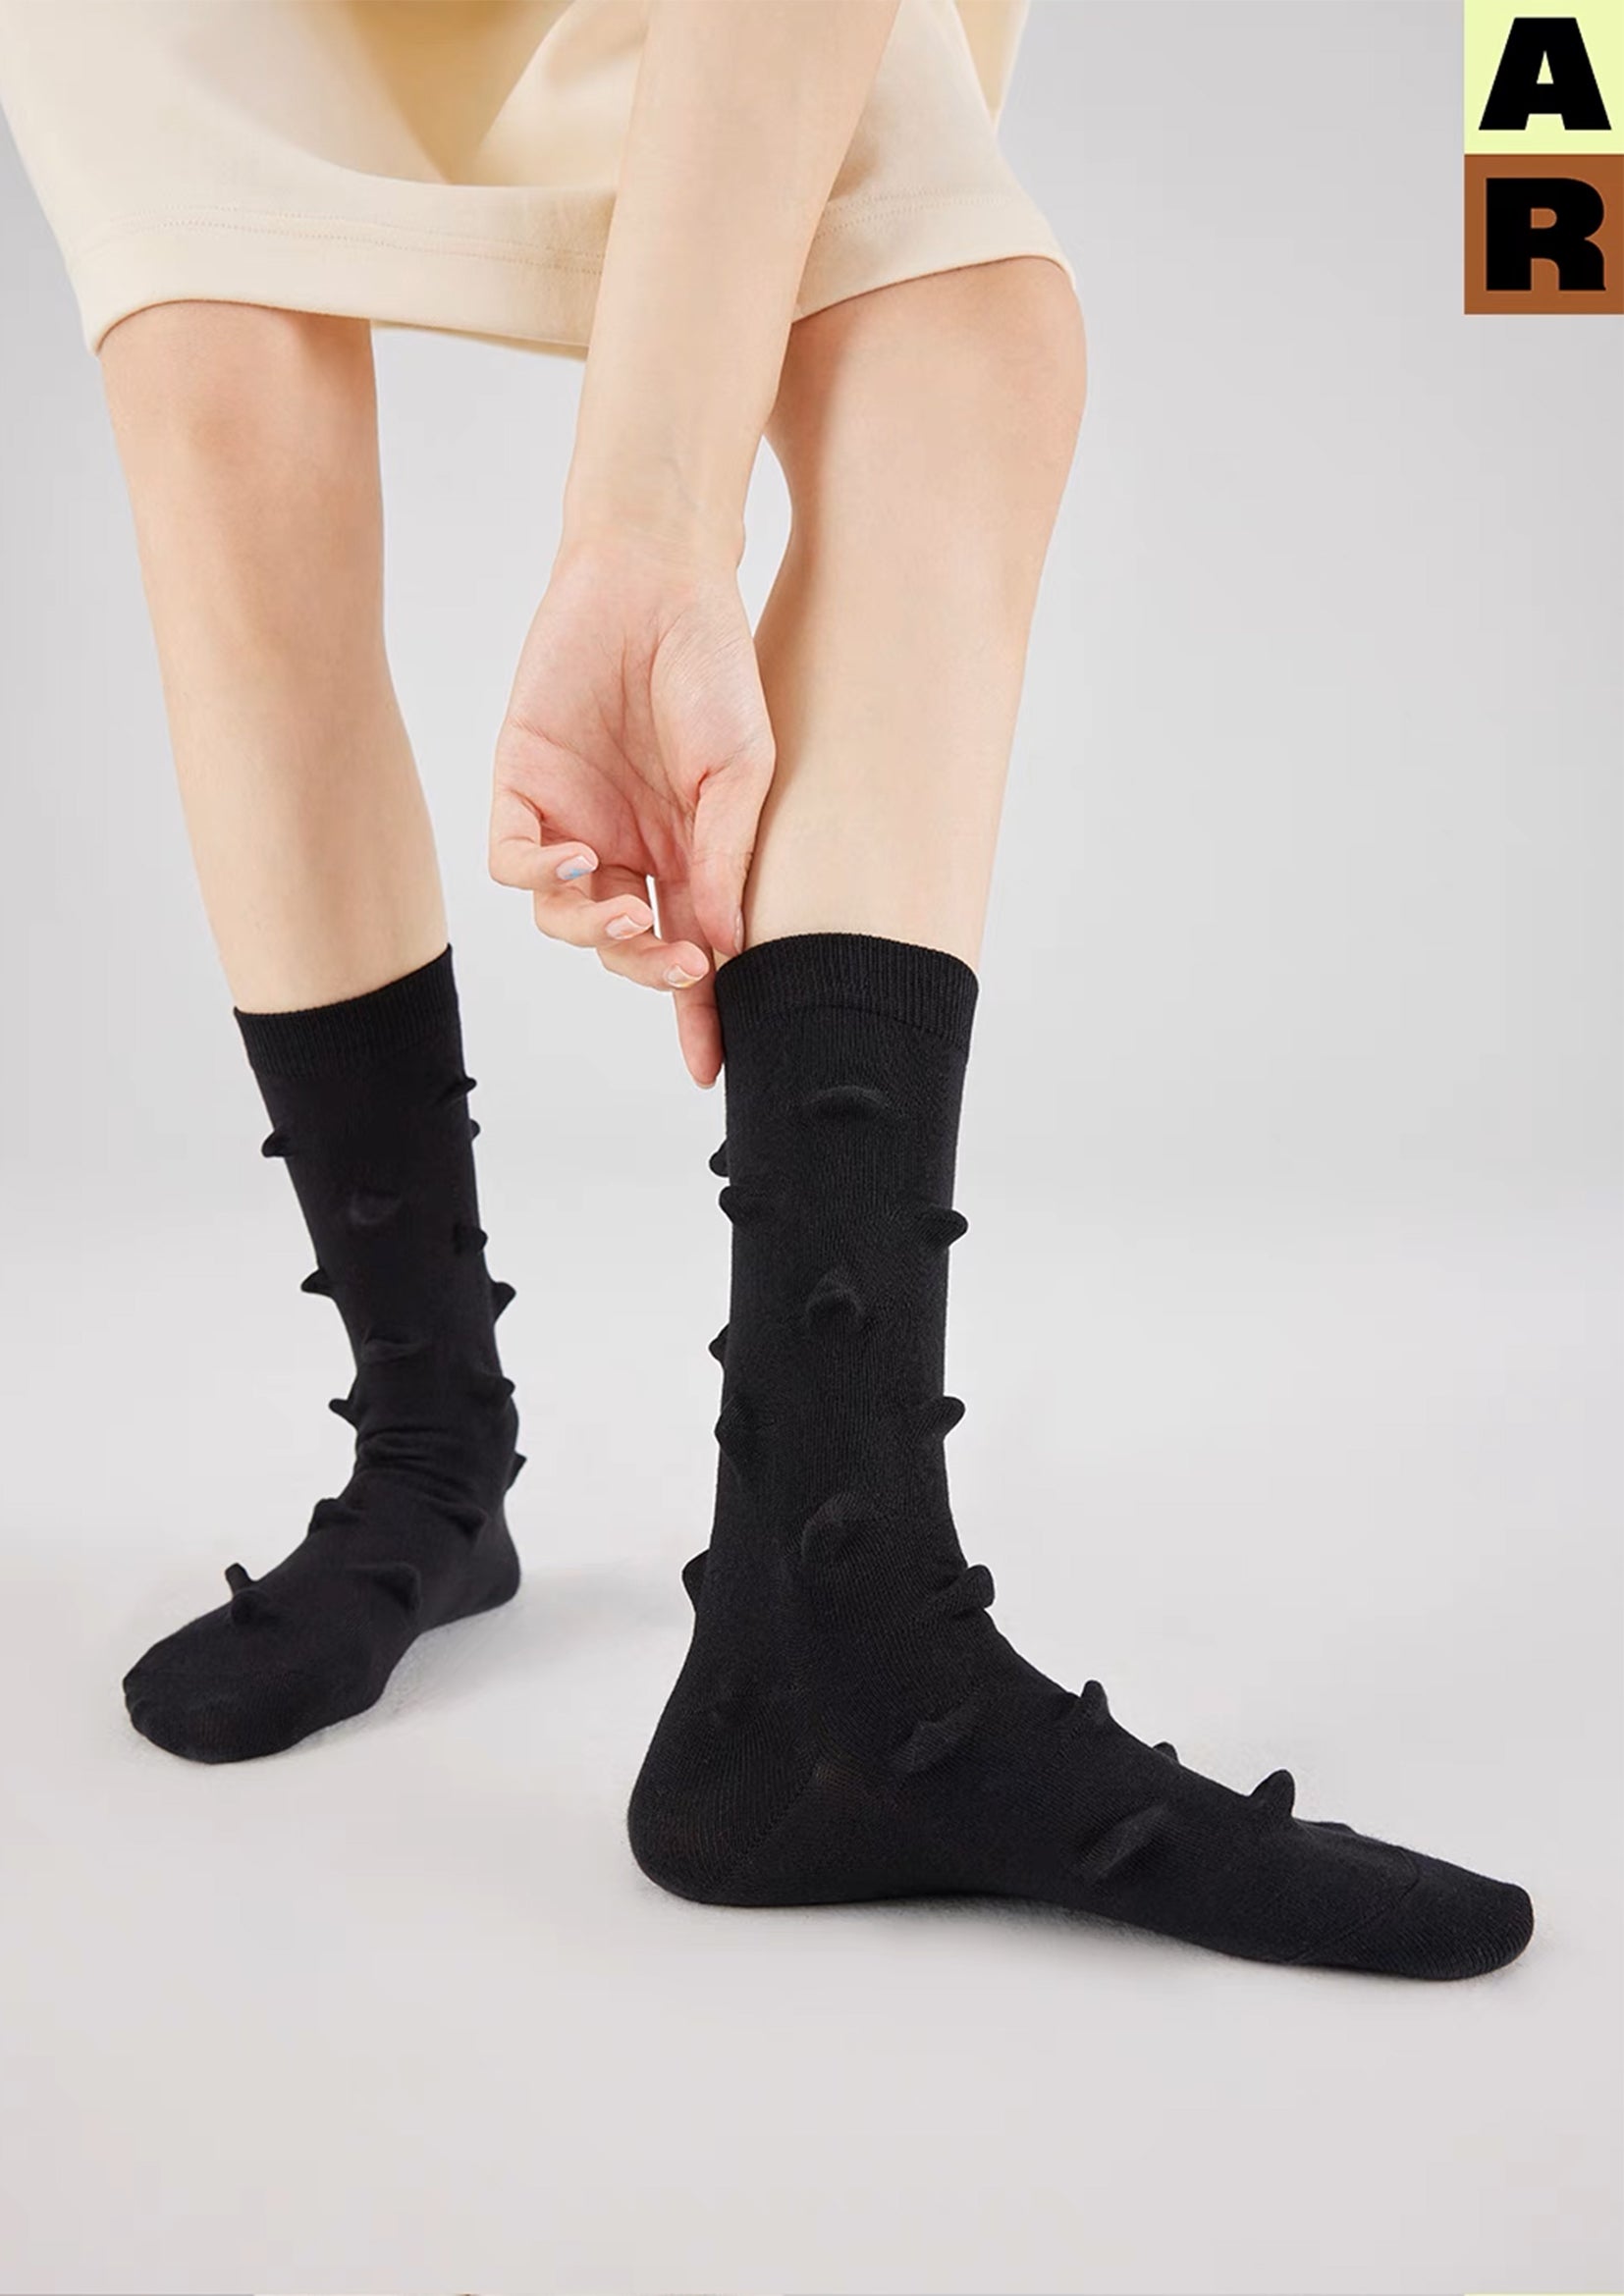 Hedgehog bumpy mid-calf sock - black